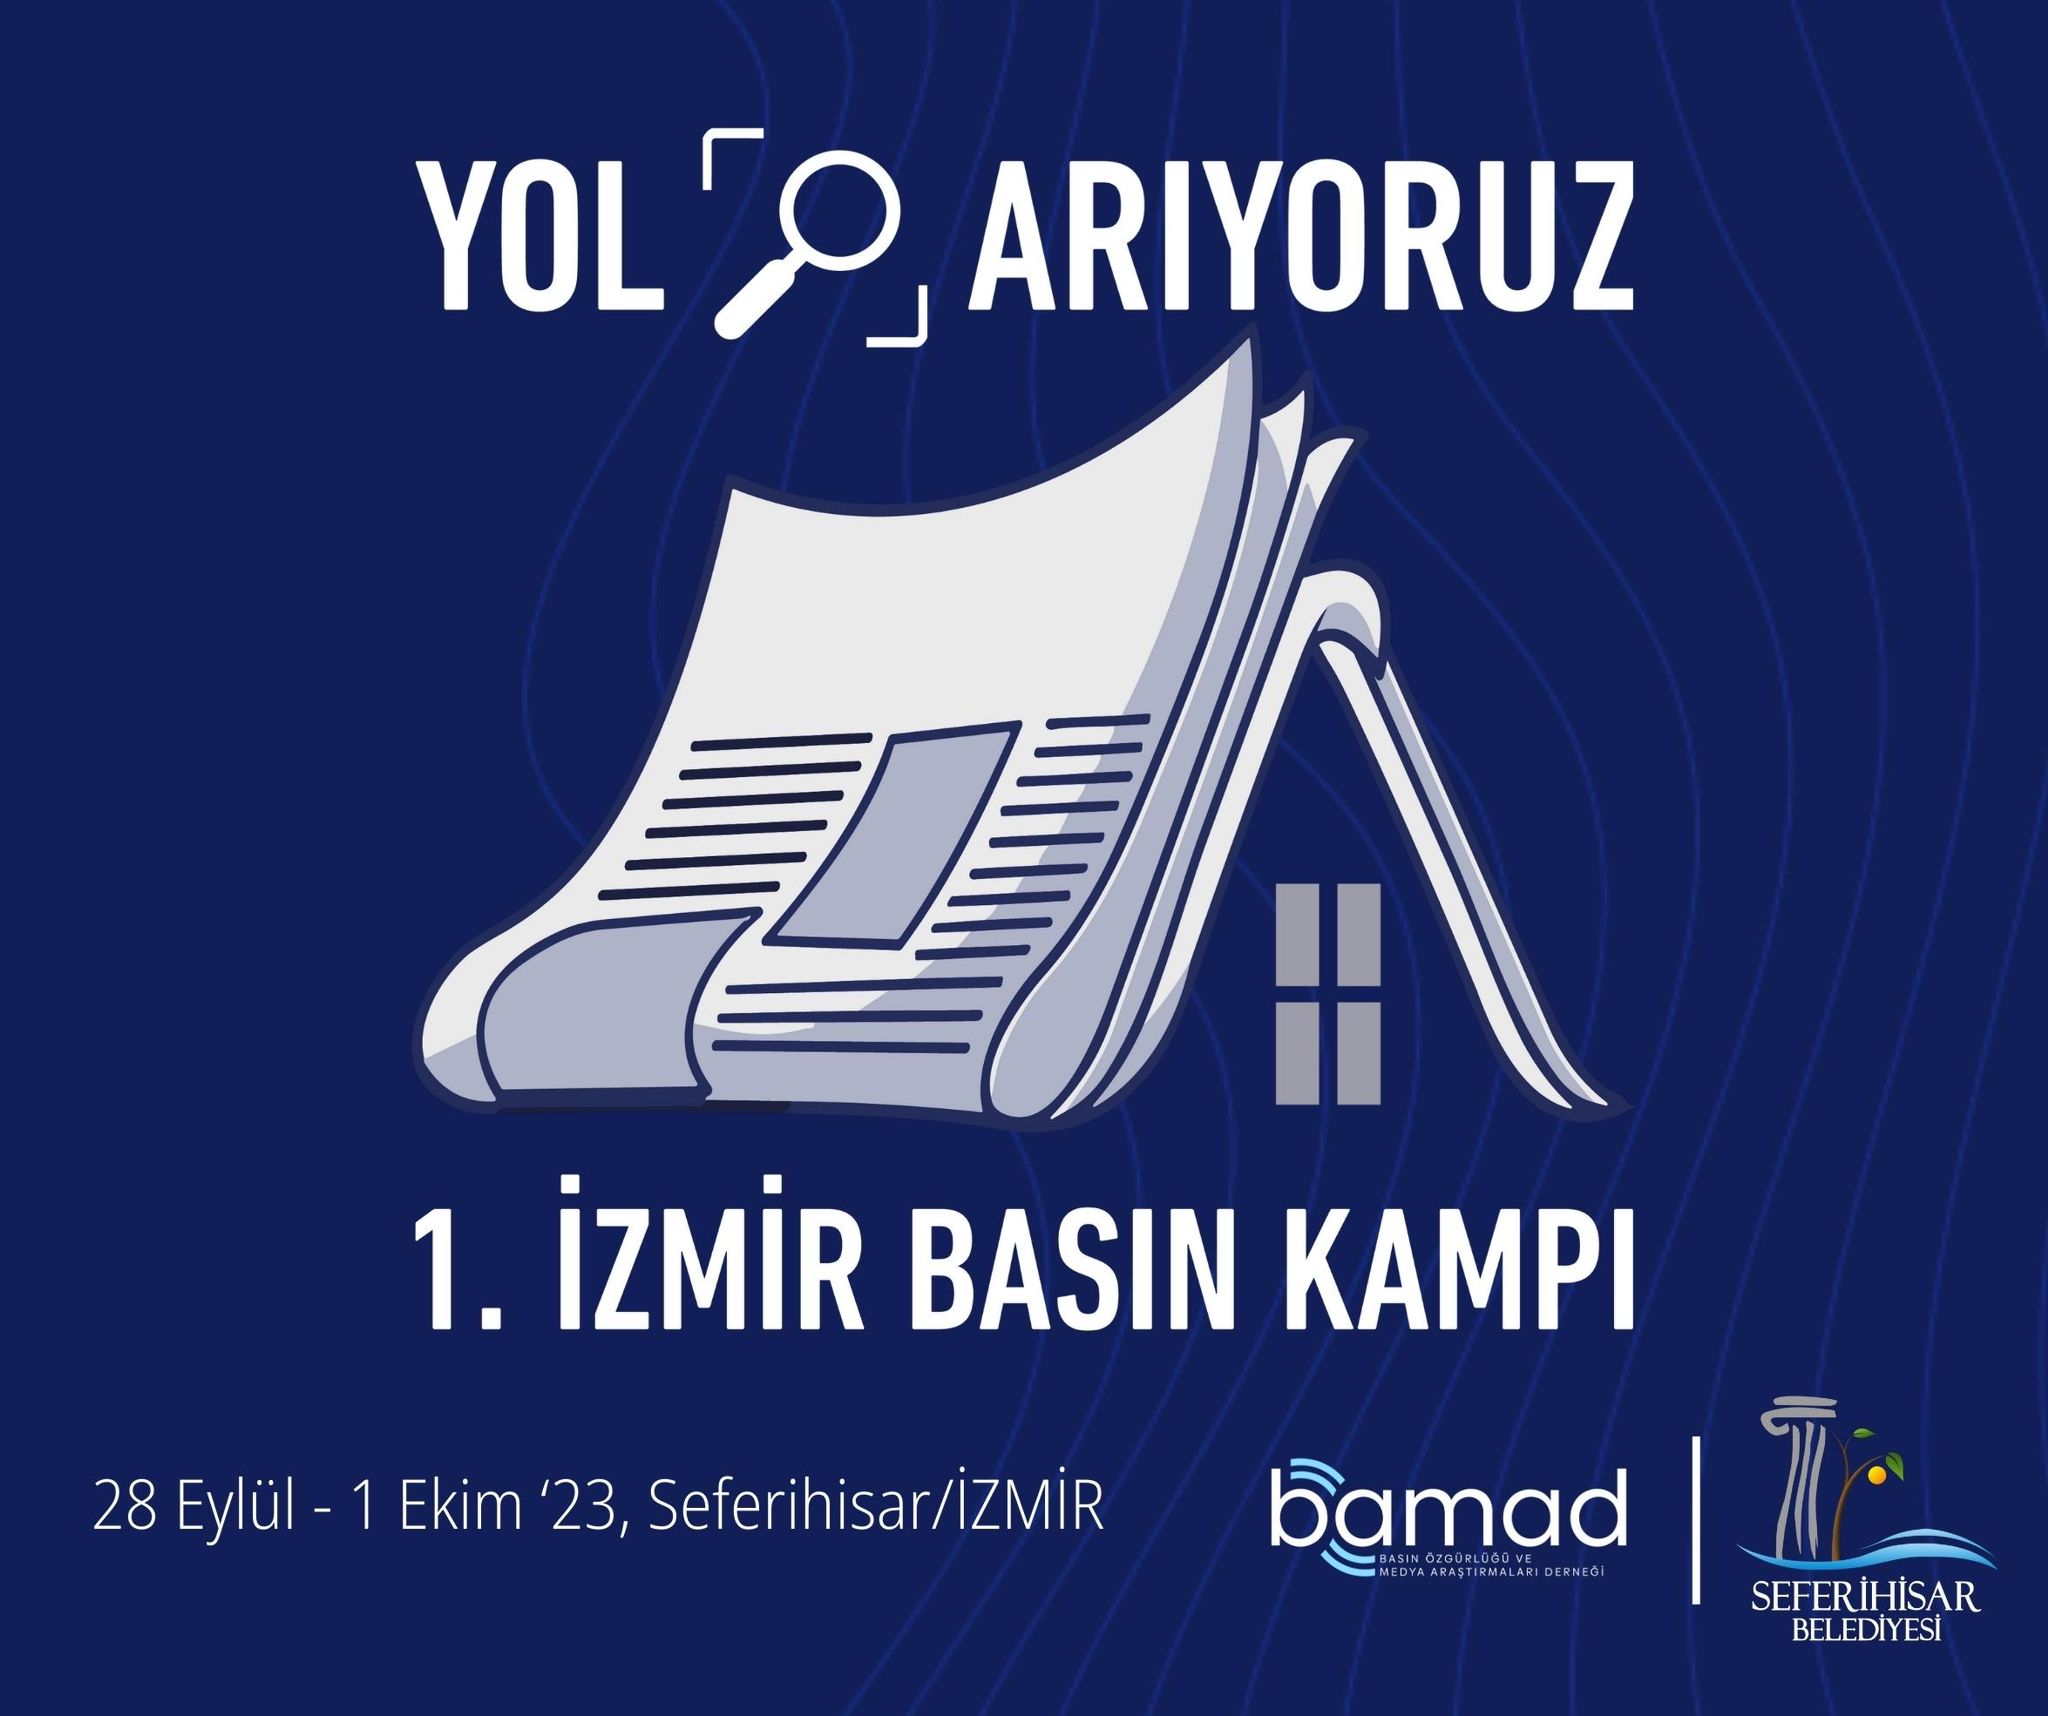 İzmir’de Basın Kampı düzenlenecek